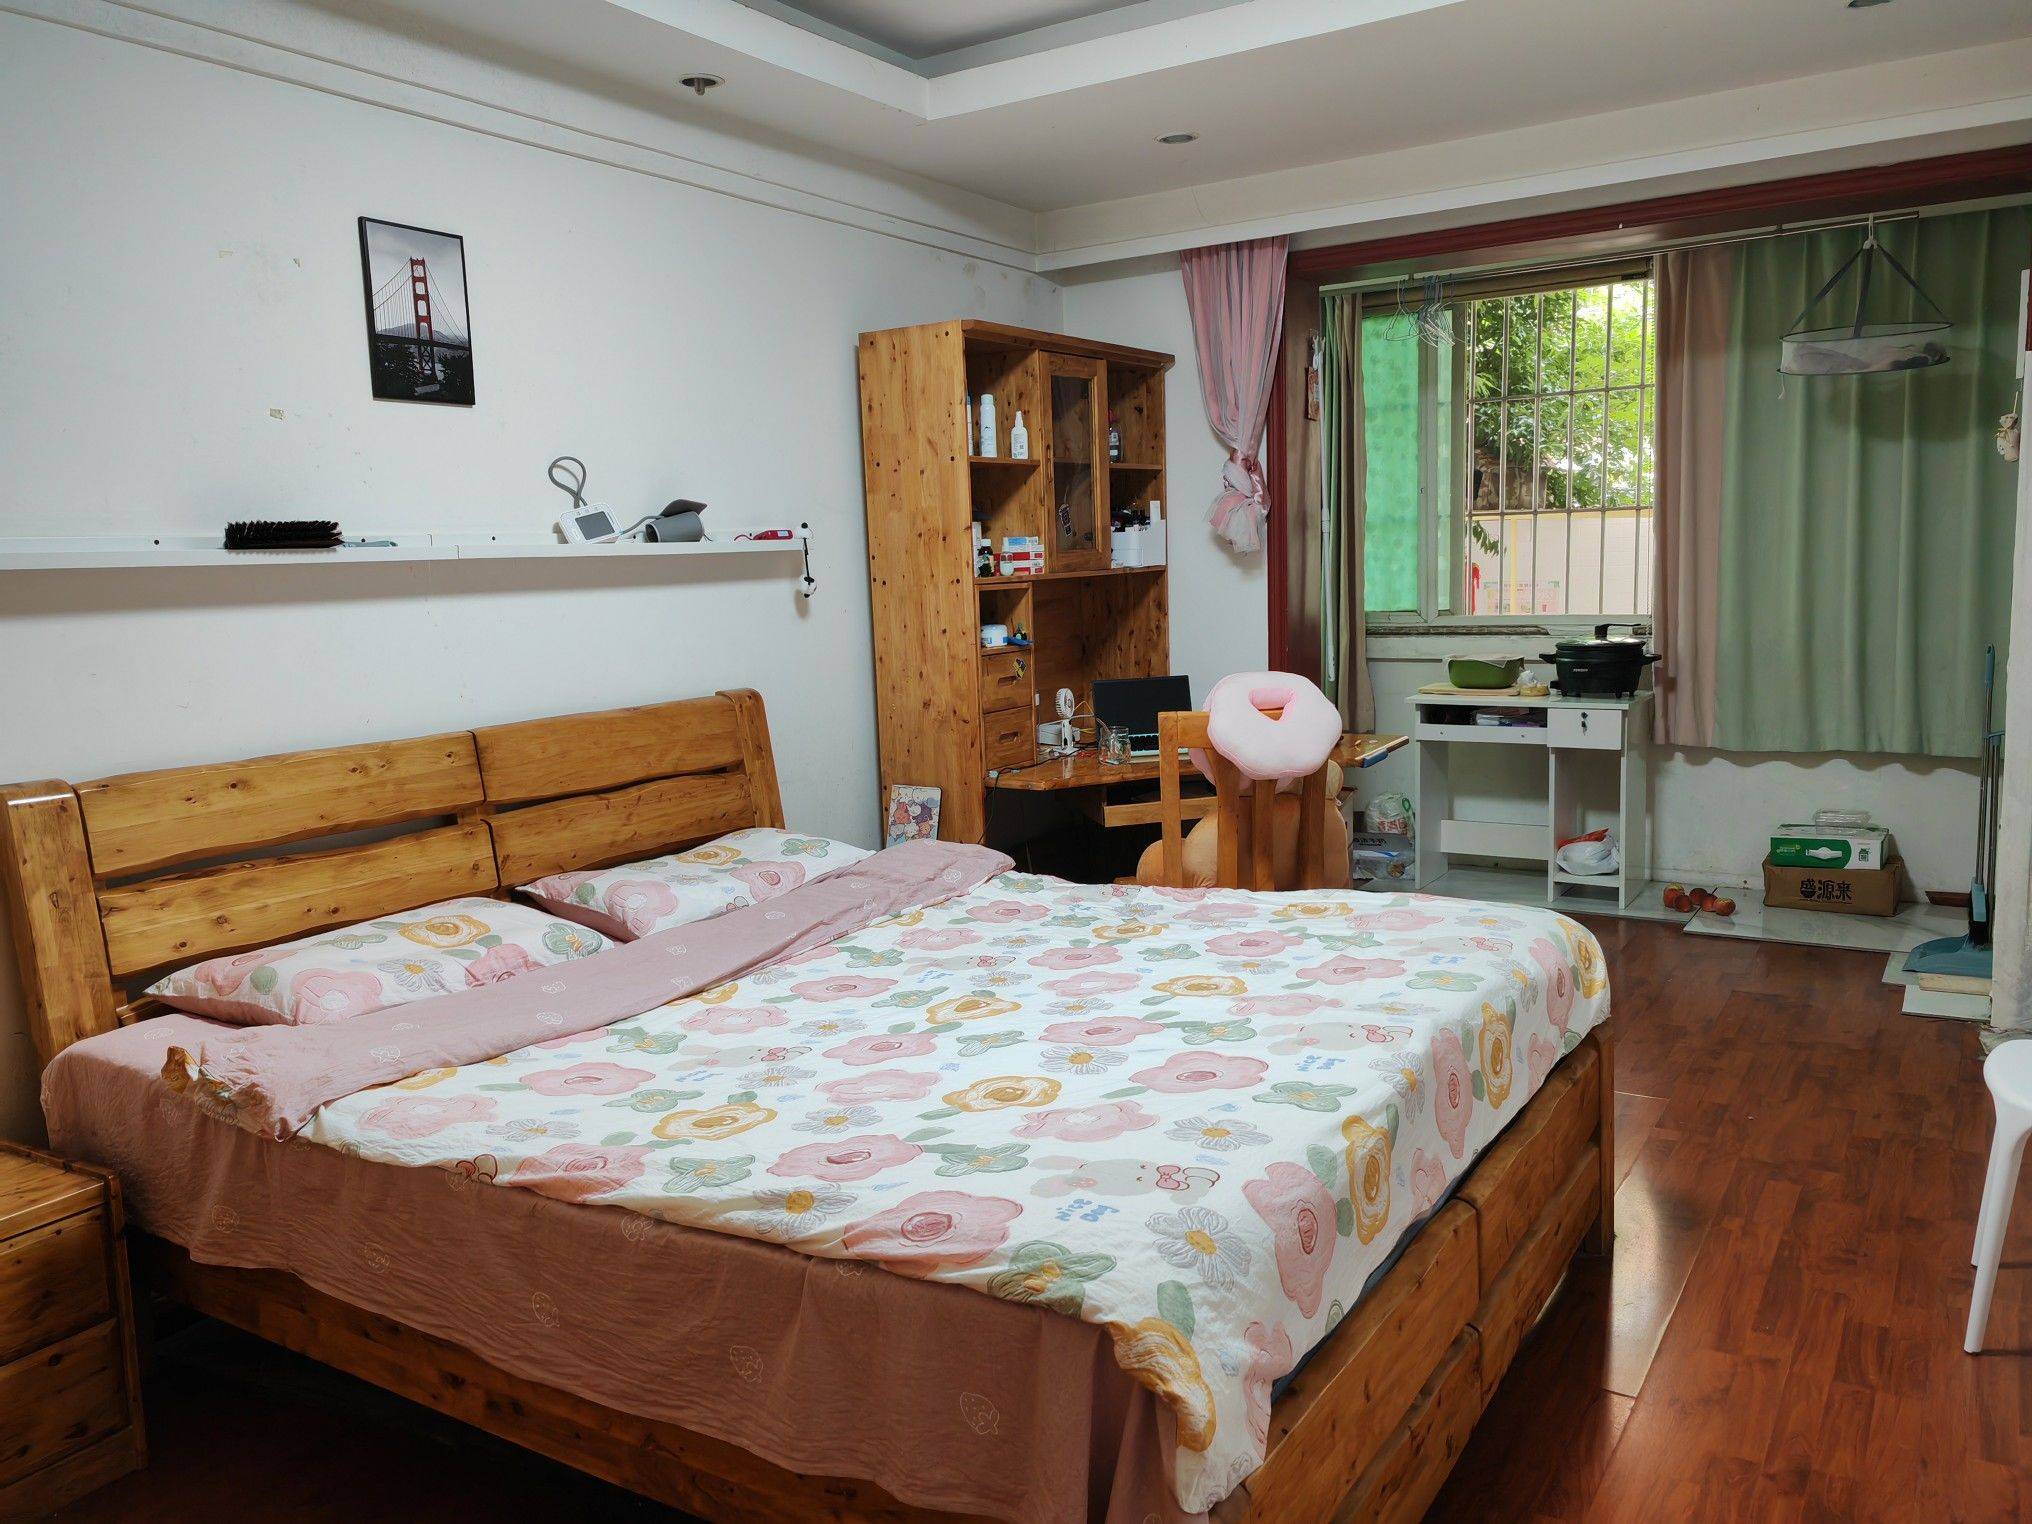 Chengdu-Wuhou-Cozy Home,Clean&Comfy,No Gender Limit,LGBTQ Friendly